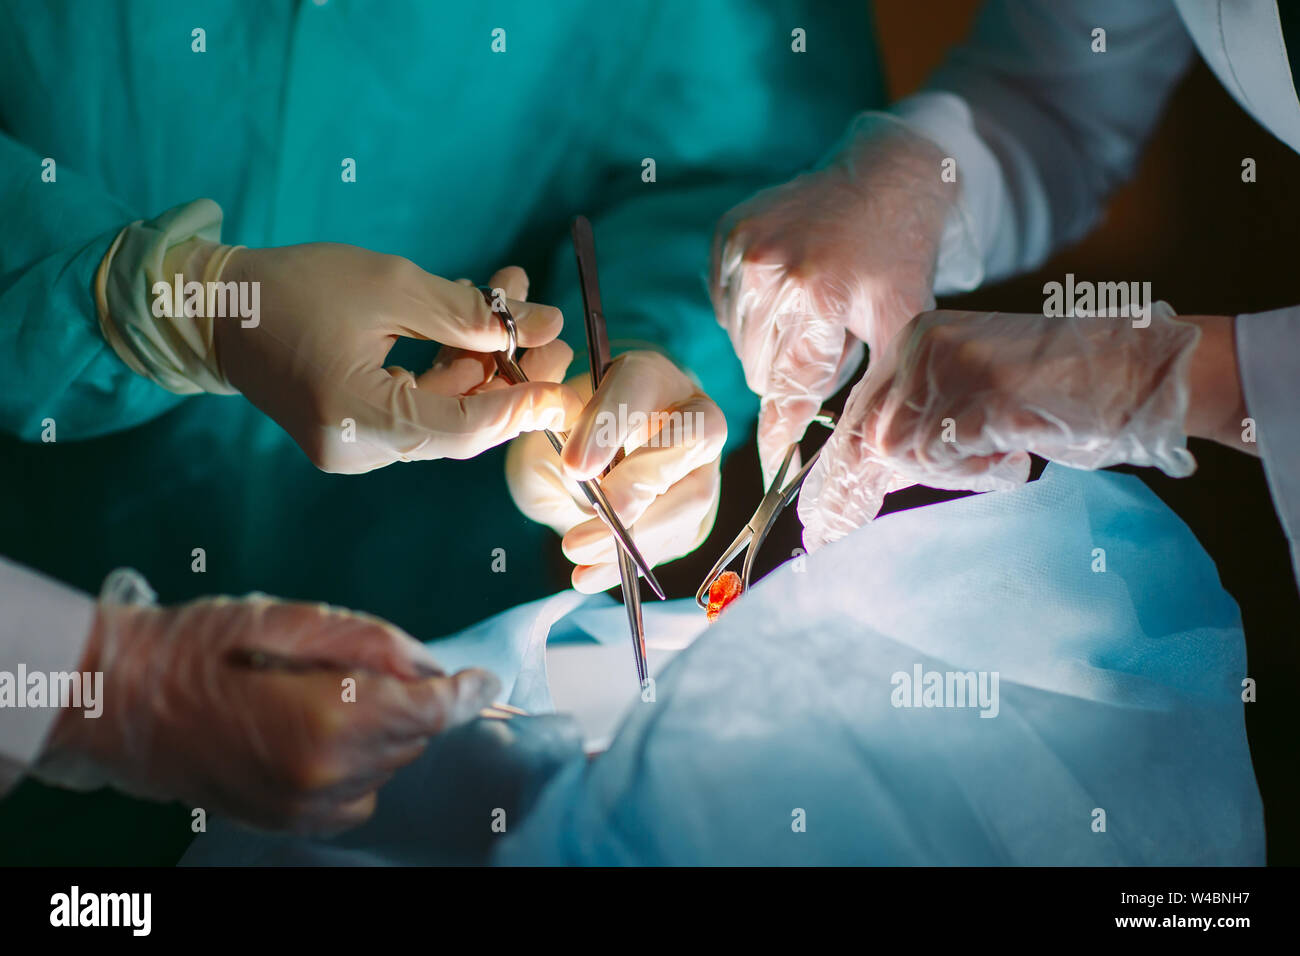 Hände close-up der Chirurgen Holding medizinische Instrumente. Der Chirurg macht einen Betrieb Stockfoto